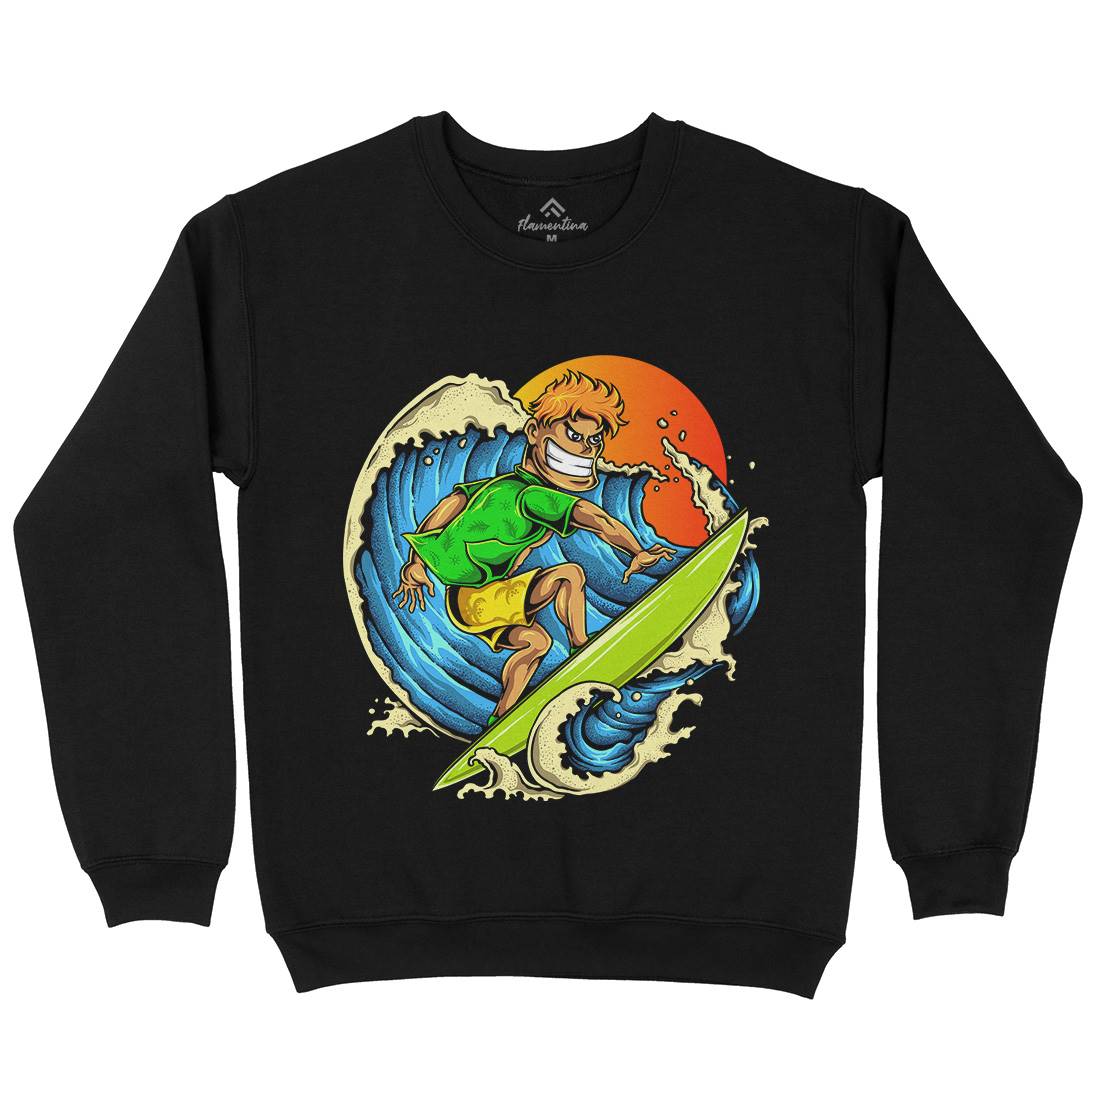 Pro Surfer Kids Crew Neck Sweatshirt Surf A454